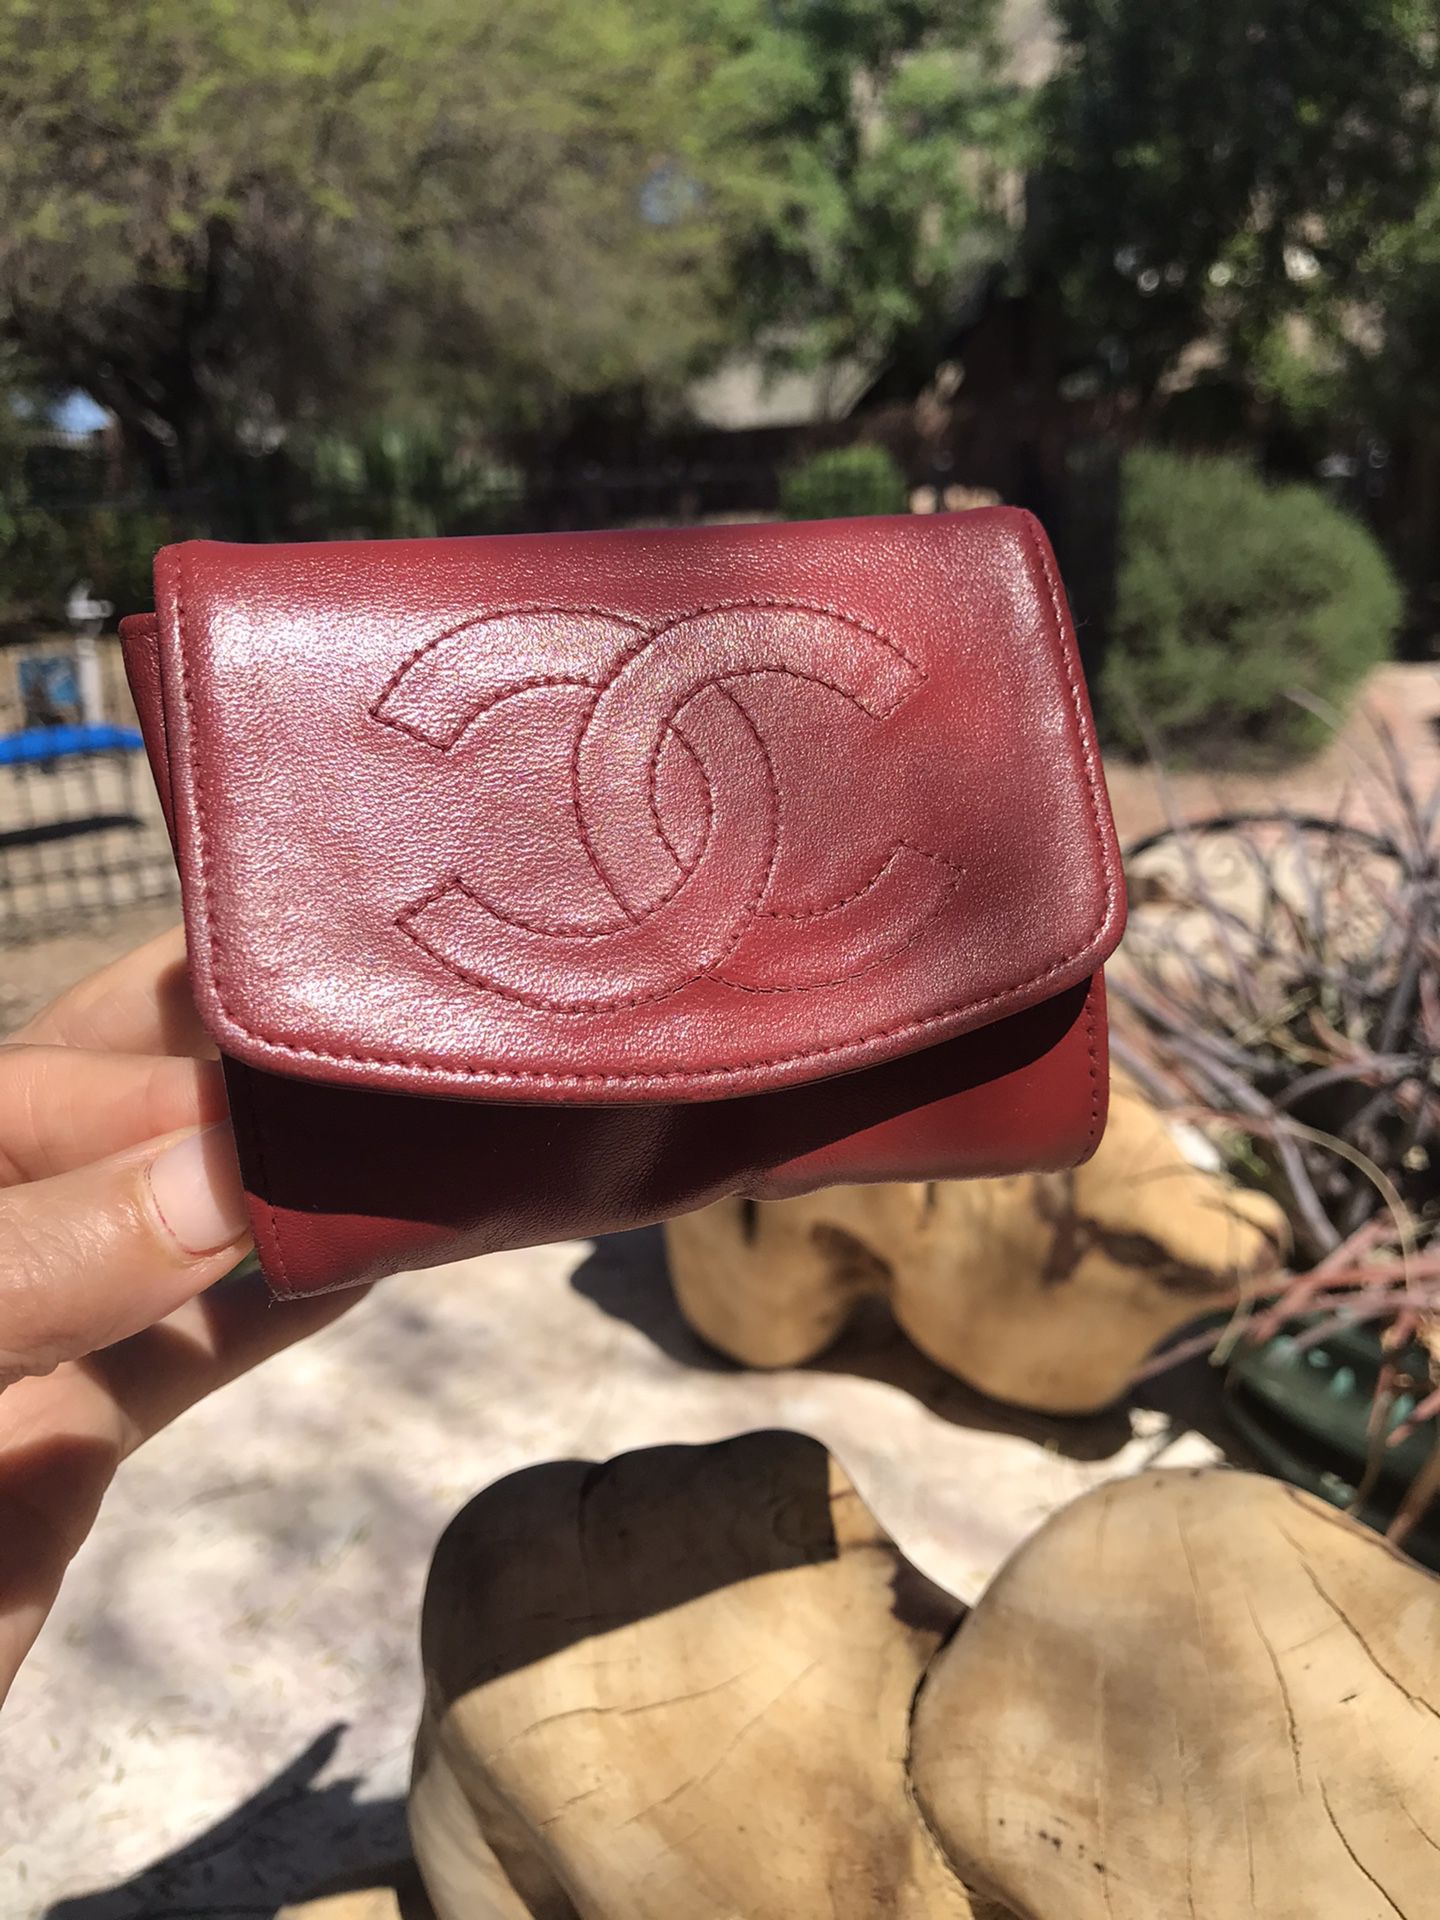 Chanel iD Wallet for Sale in Phoenix, AZ - OfferUp